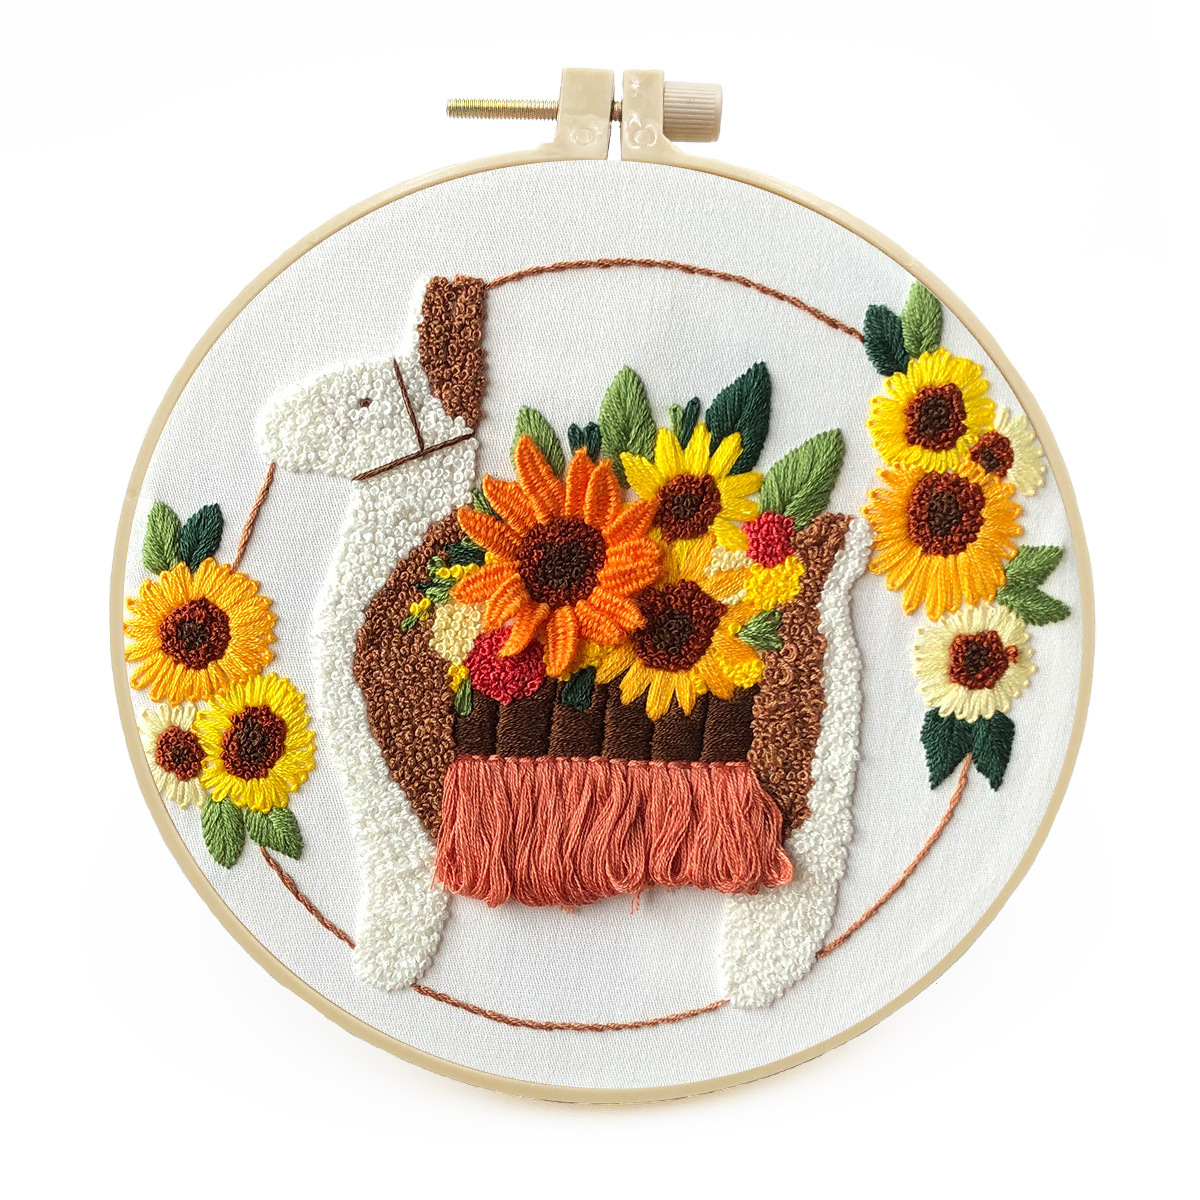 Embroidery starter kit for Adult Beginner - Alpaca Sunflower Pattern